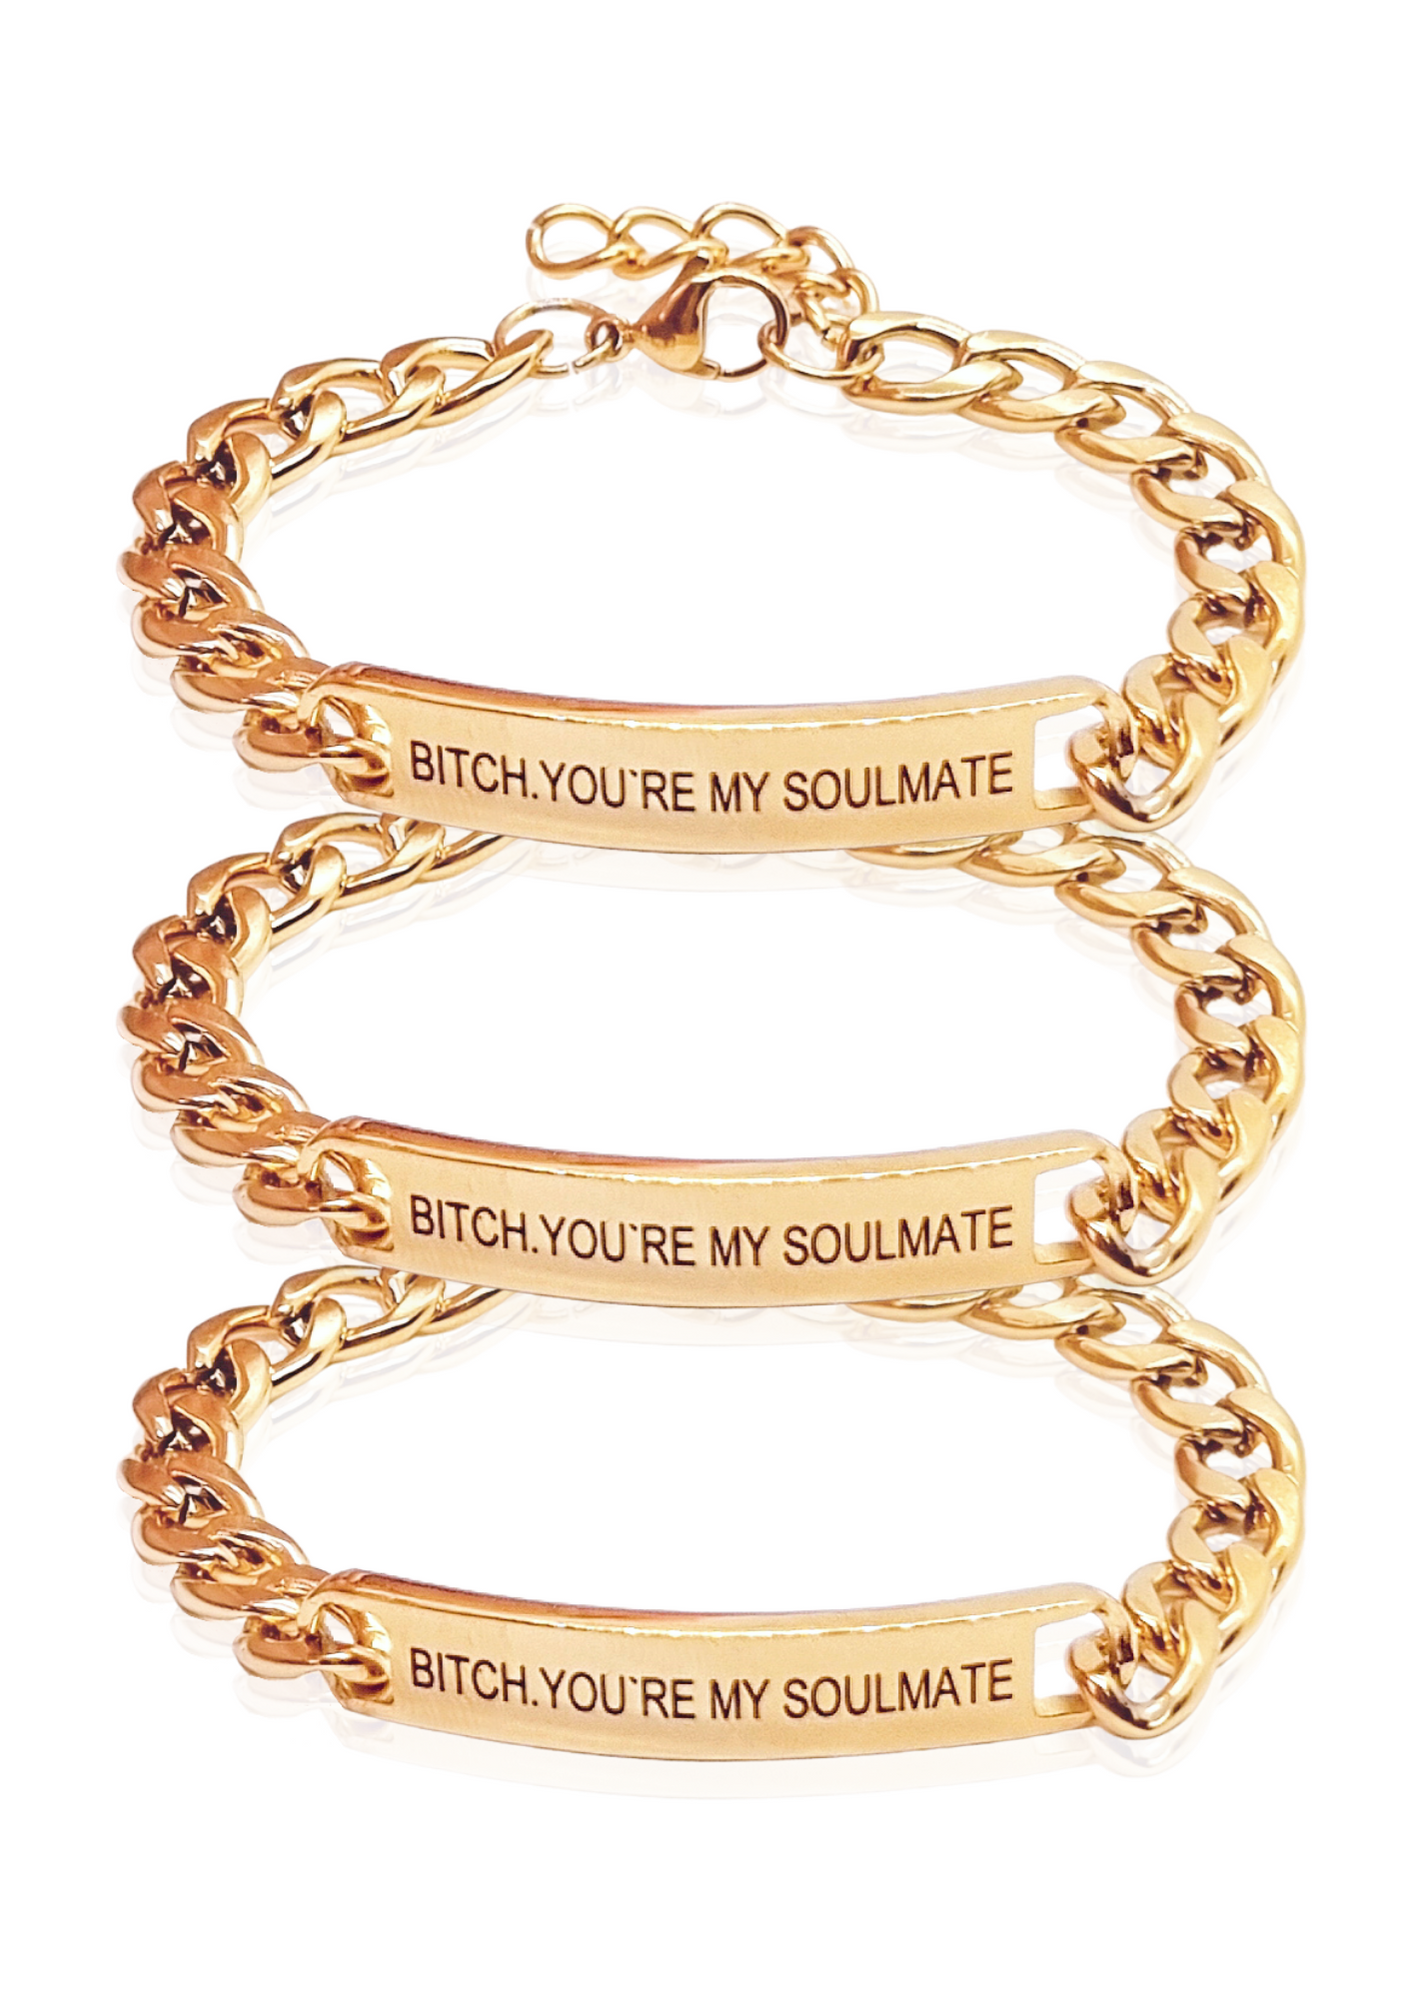 Couple bracelet, friend bracelet, soulmate bracelet at Rs 189.00 | Delhi|  ID: 2853213048462